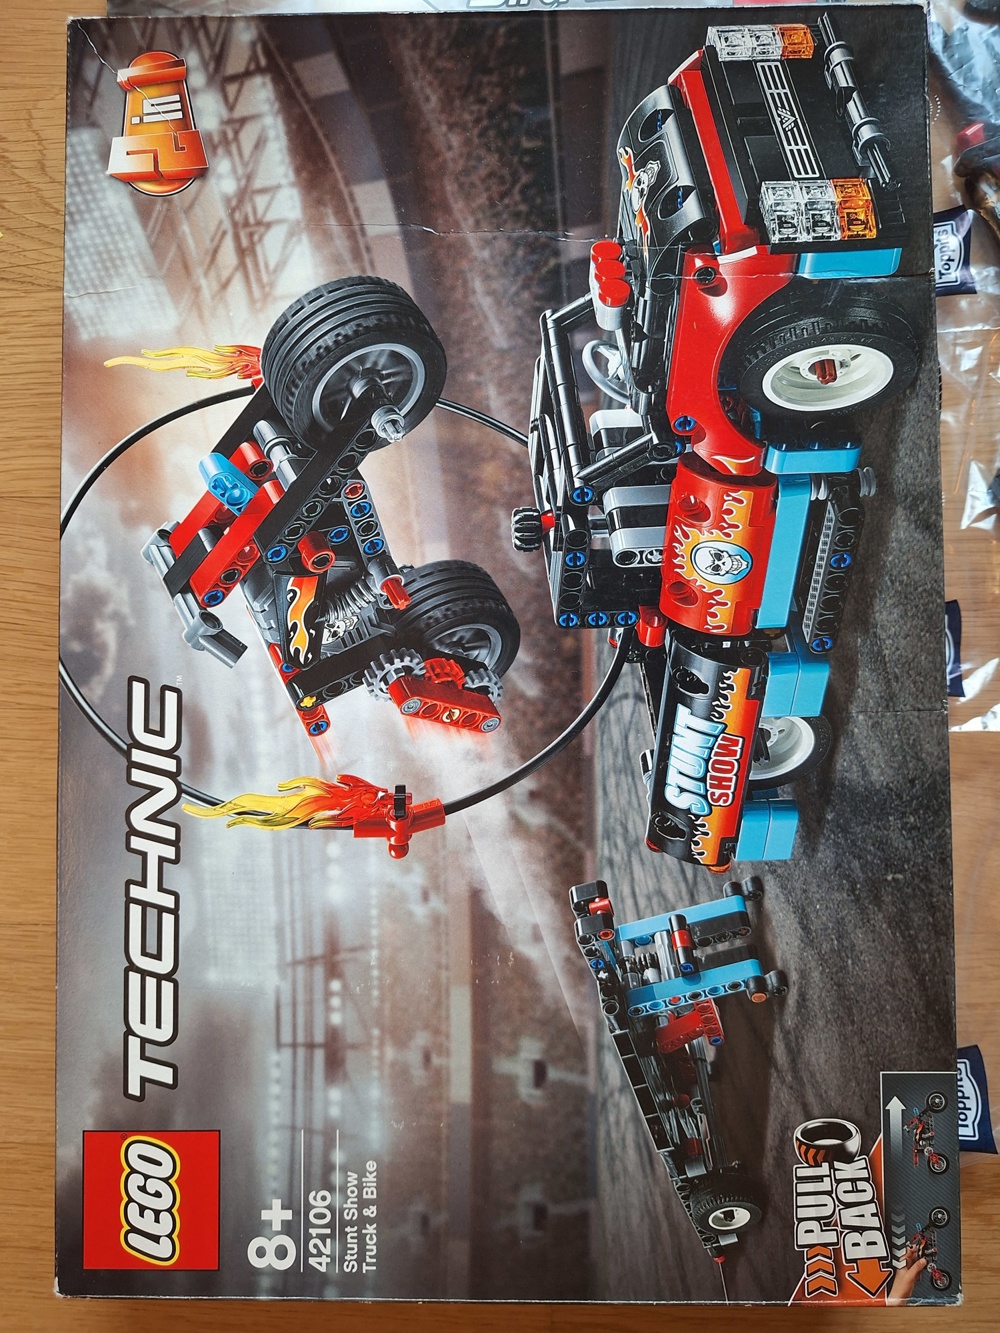 42106 Lego Technik Stunt-Show mit Truck und Motorrad